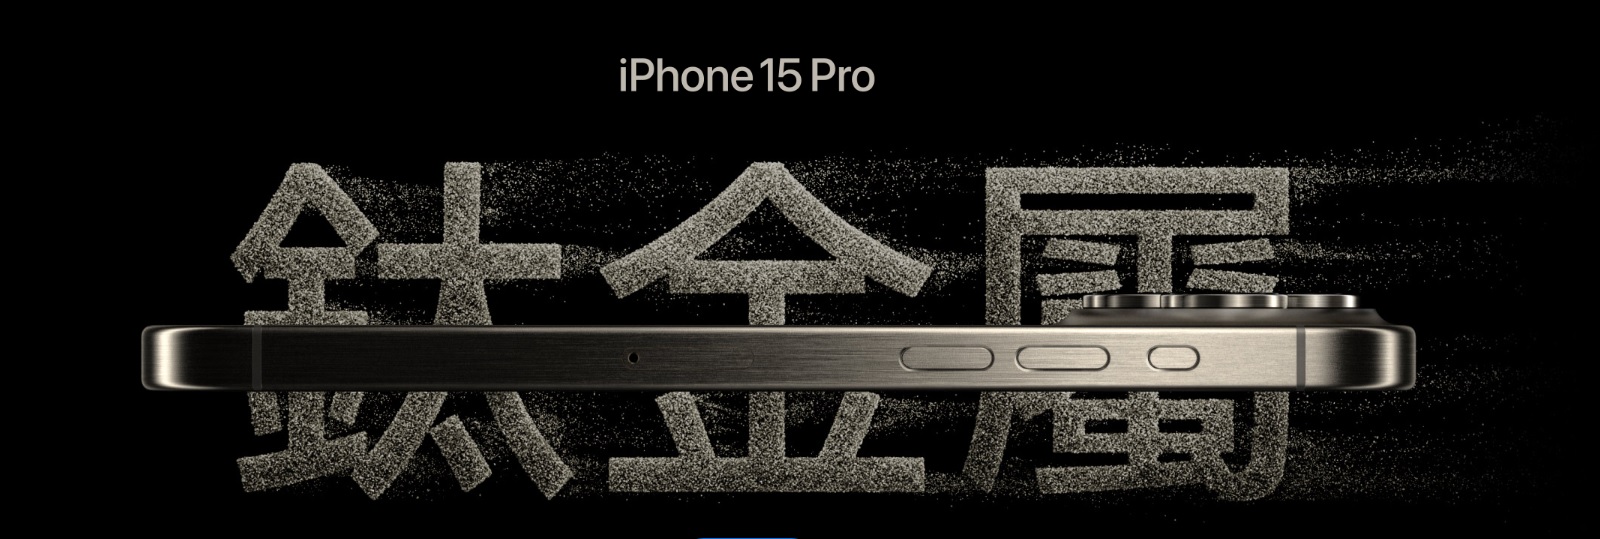 iphone 15 pro 使用鈦金屬材質